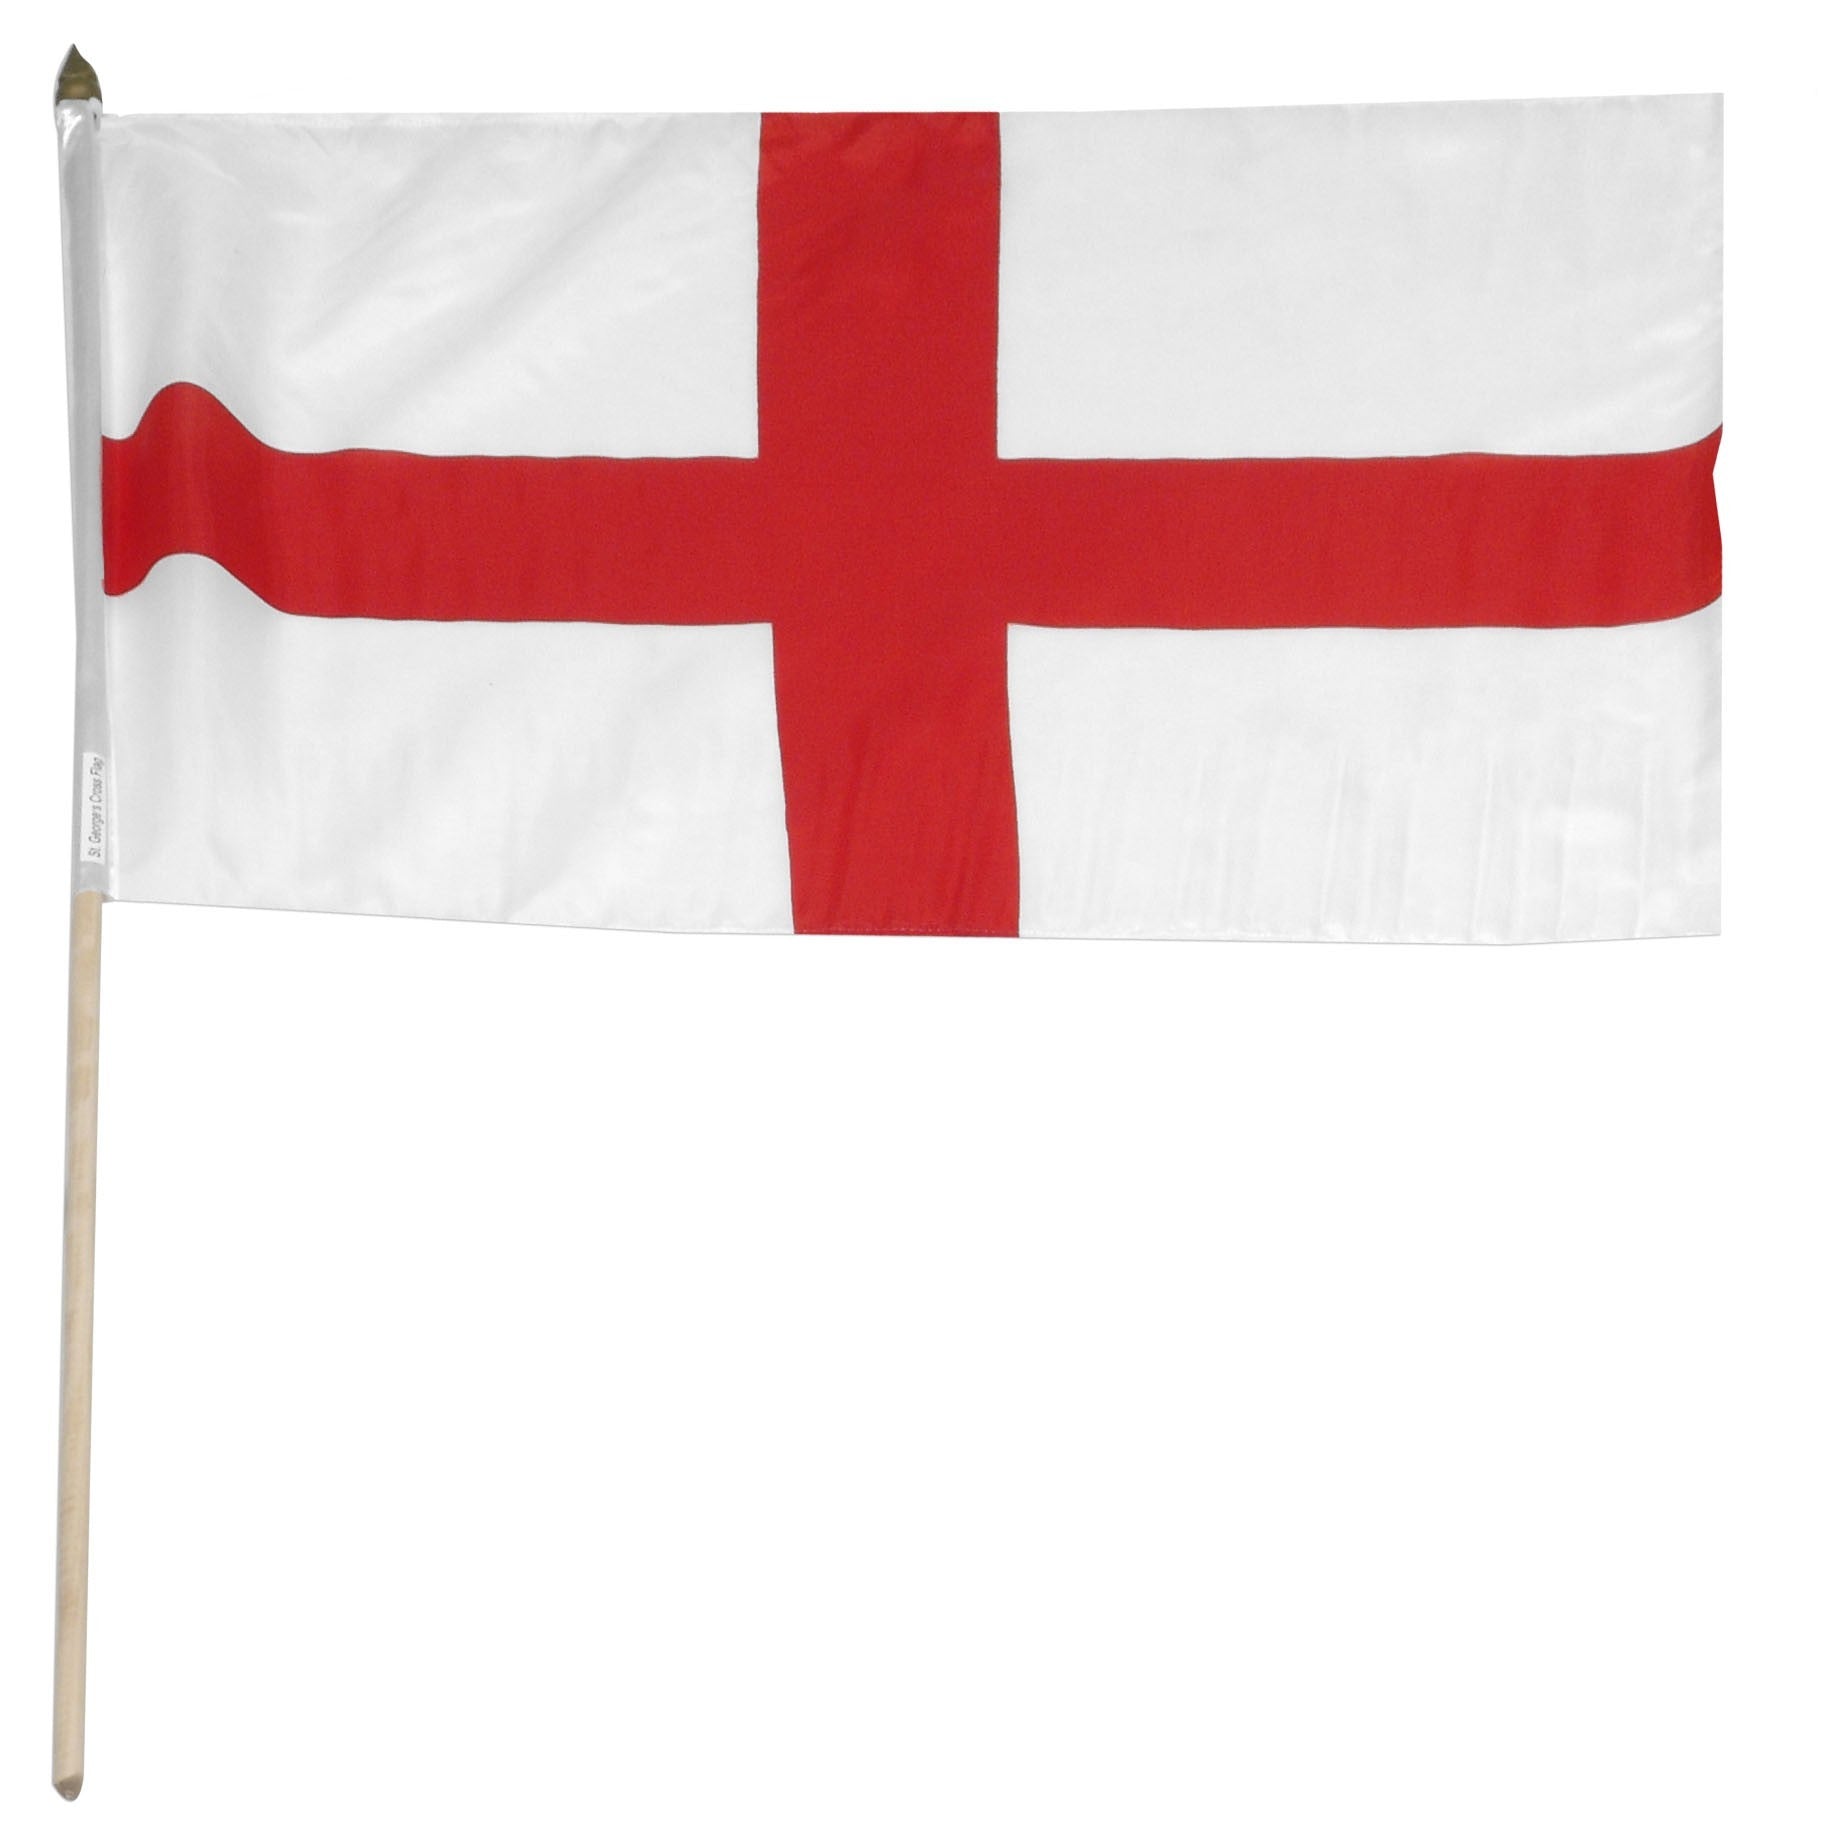 Bandera de palo montada con cruz de San Jorge de Inglaterra, 12.0 x 18.0 in